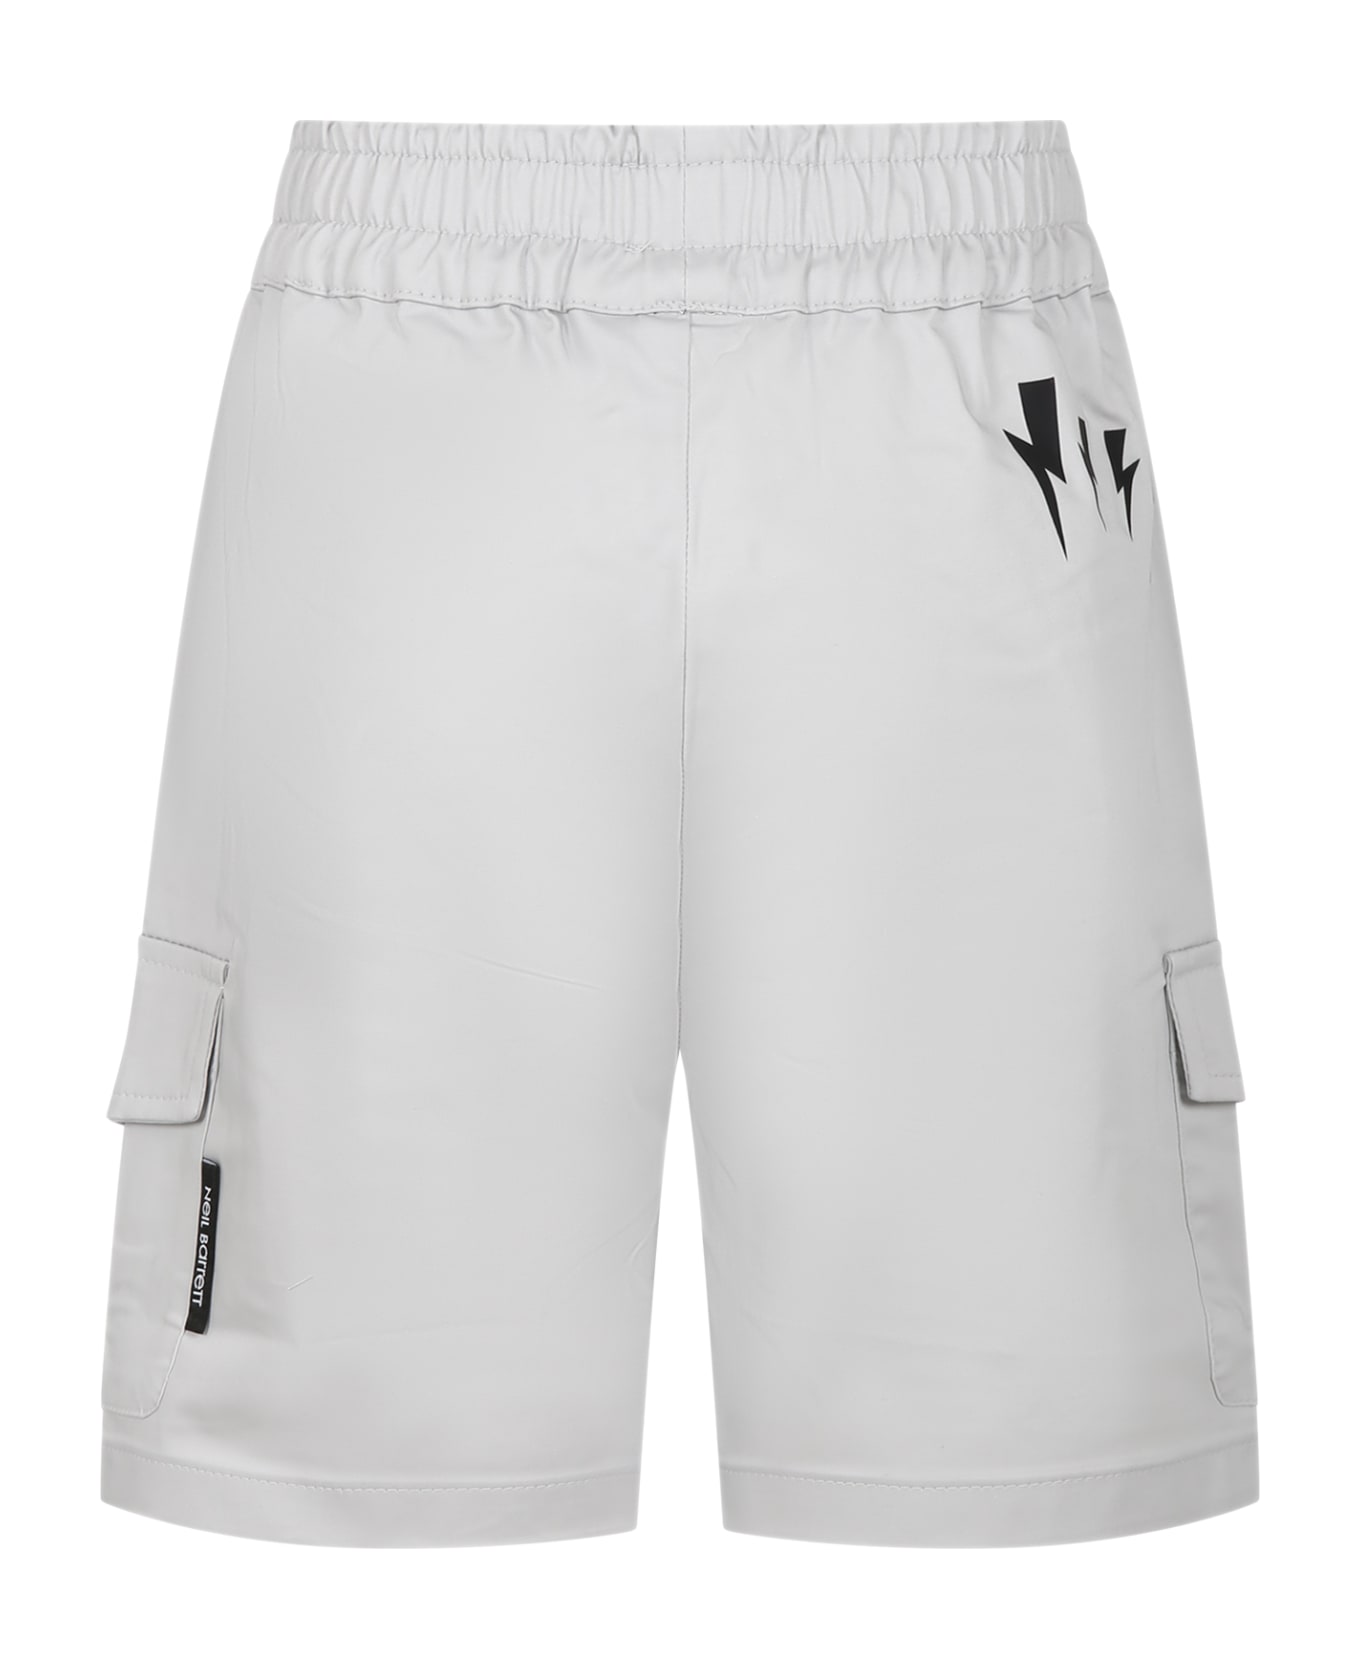 Neil Barrett Grey Shorts For Boy - Grey ボトムス